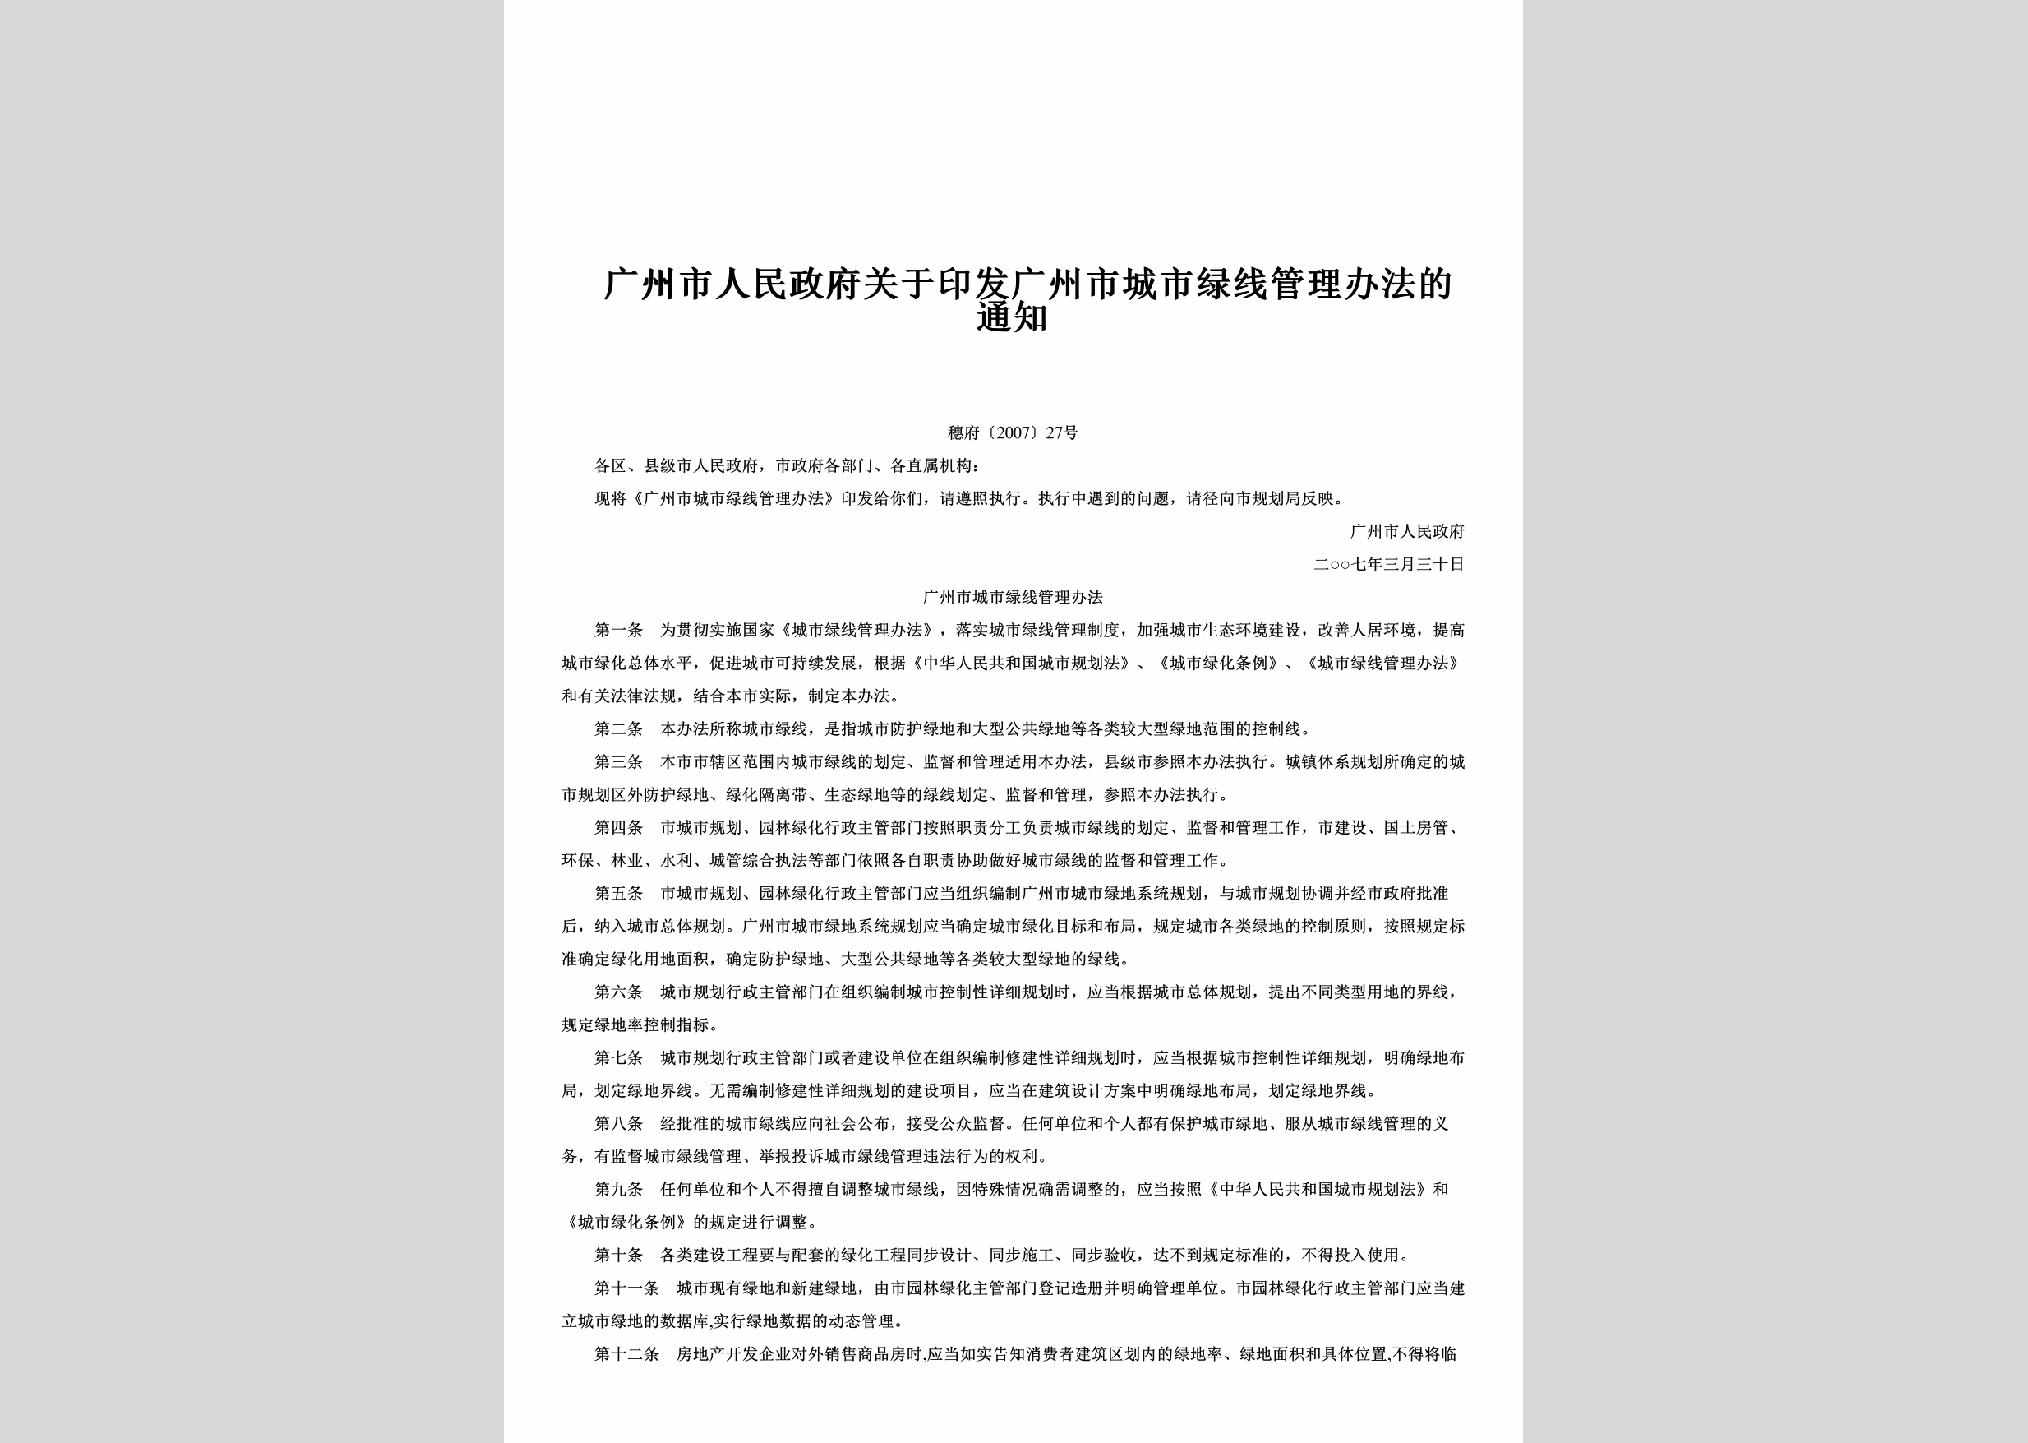 穗府[2007]27号：关于印发广州市城市绿线管理办法的通知